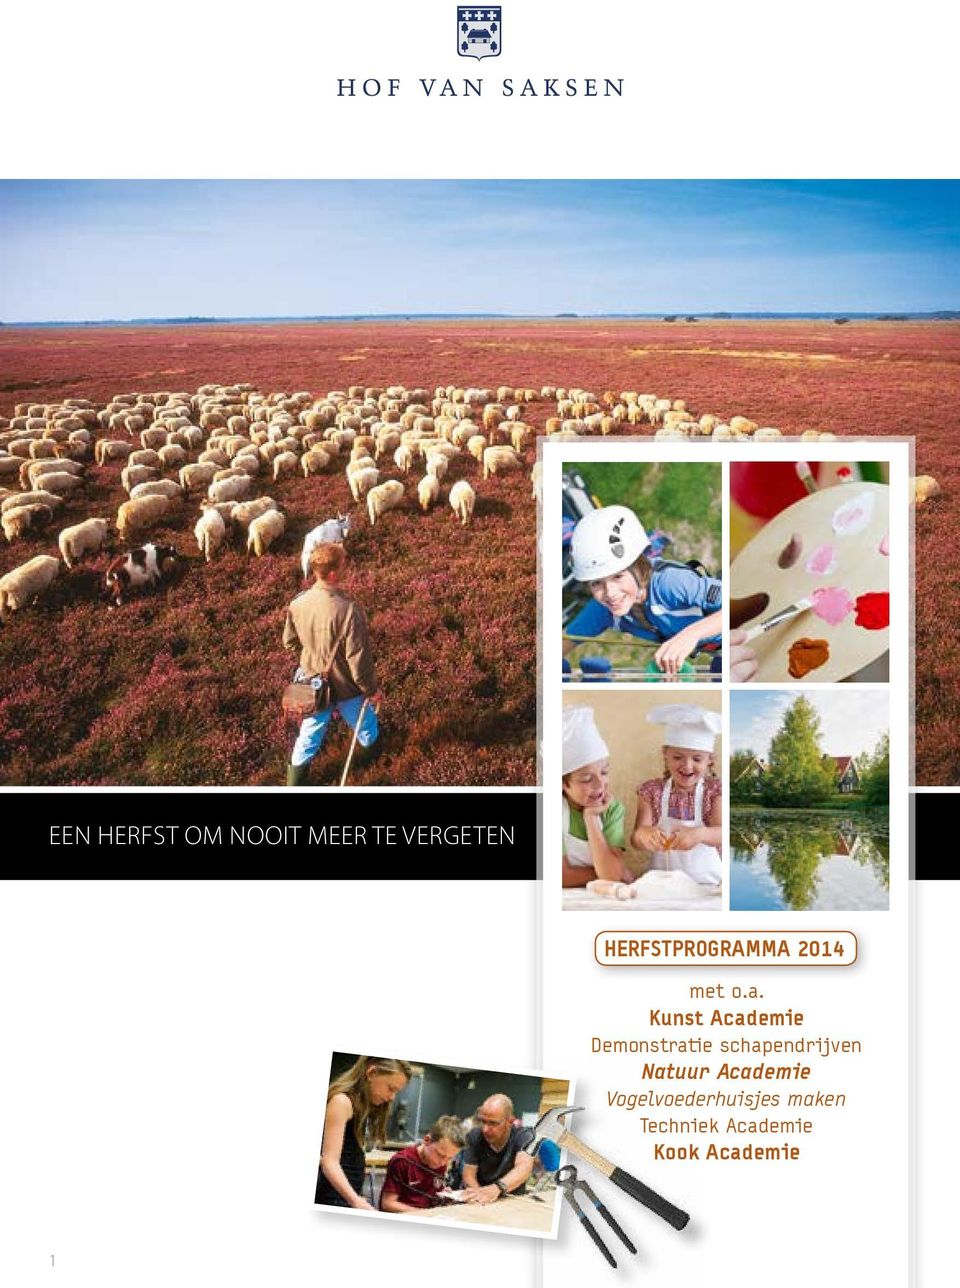 Kunst Academie Demonstratie schapendrijven